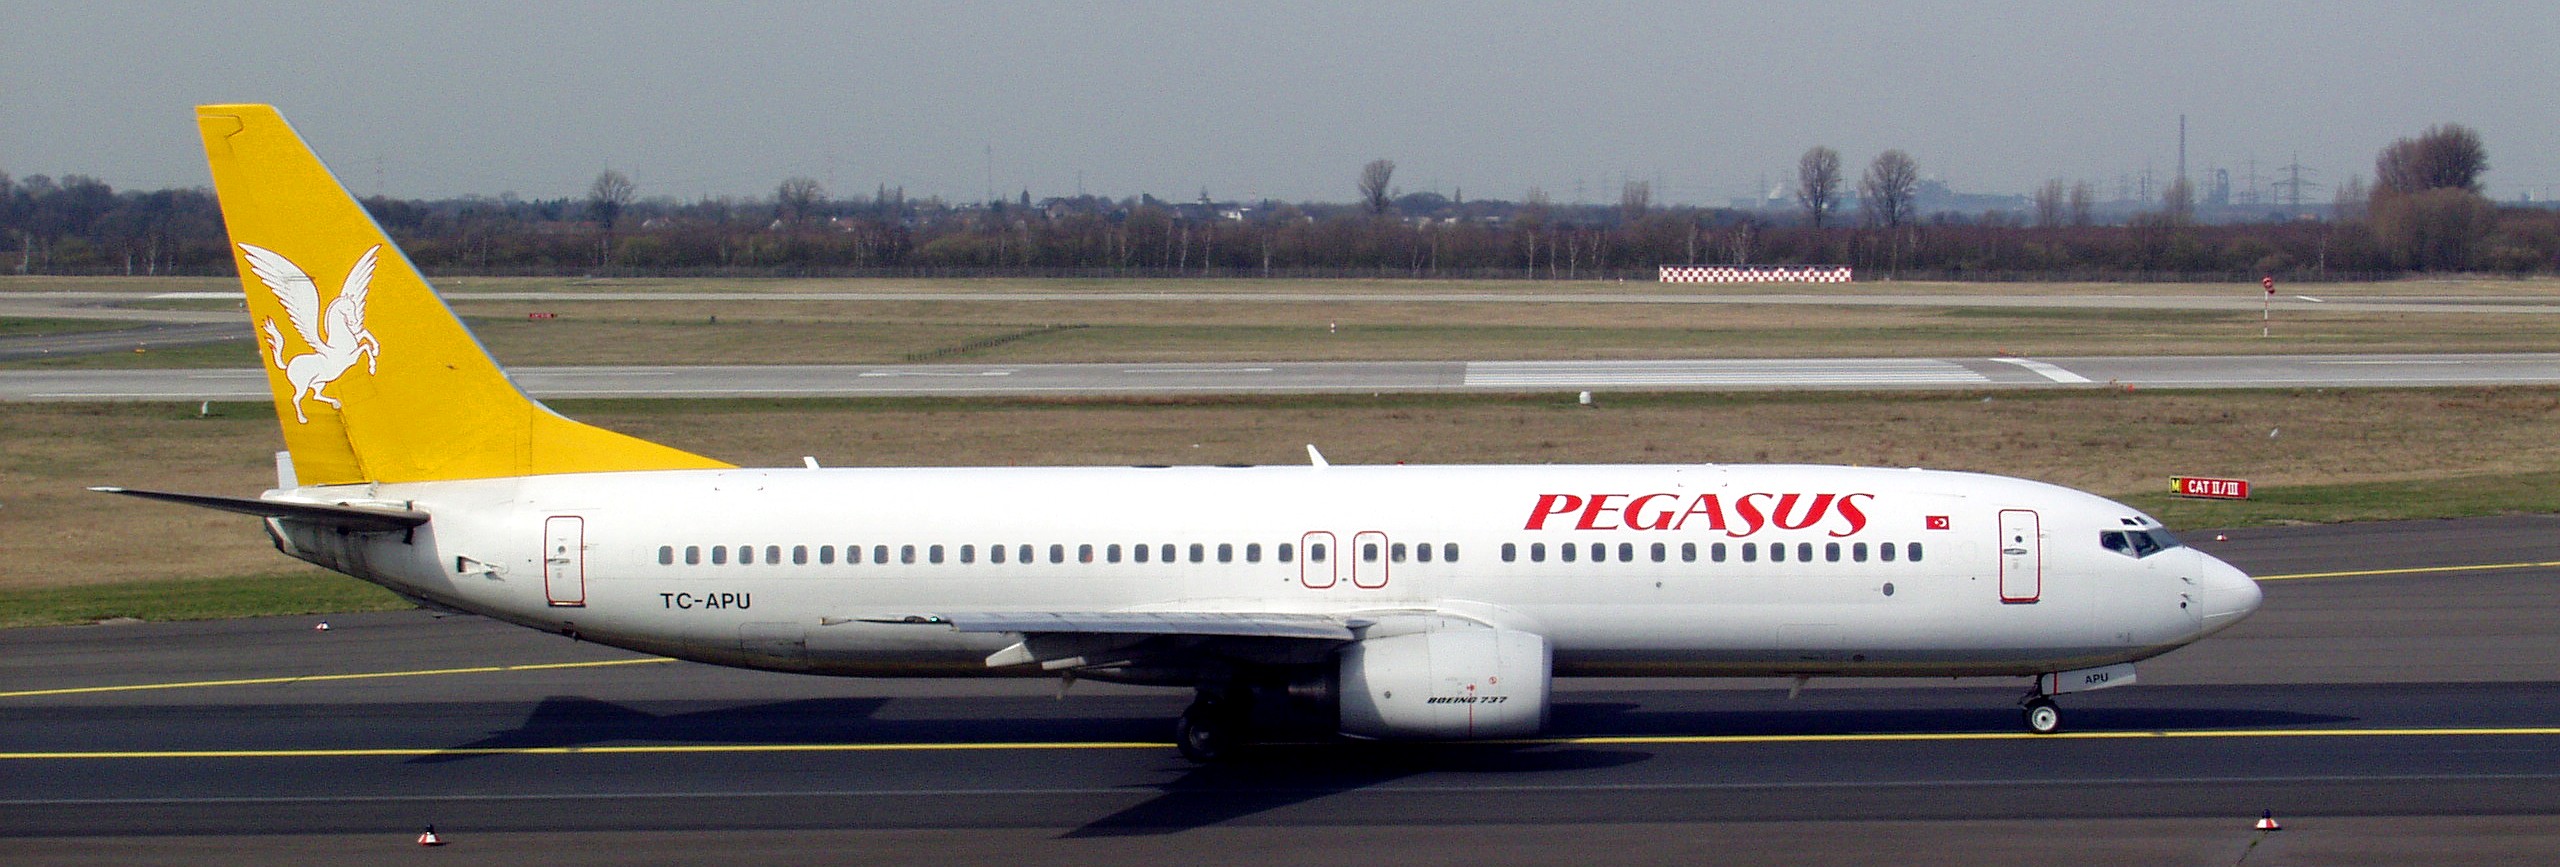 Pegasus Airlines - Boeing 737-82R (TC-APU)